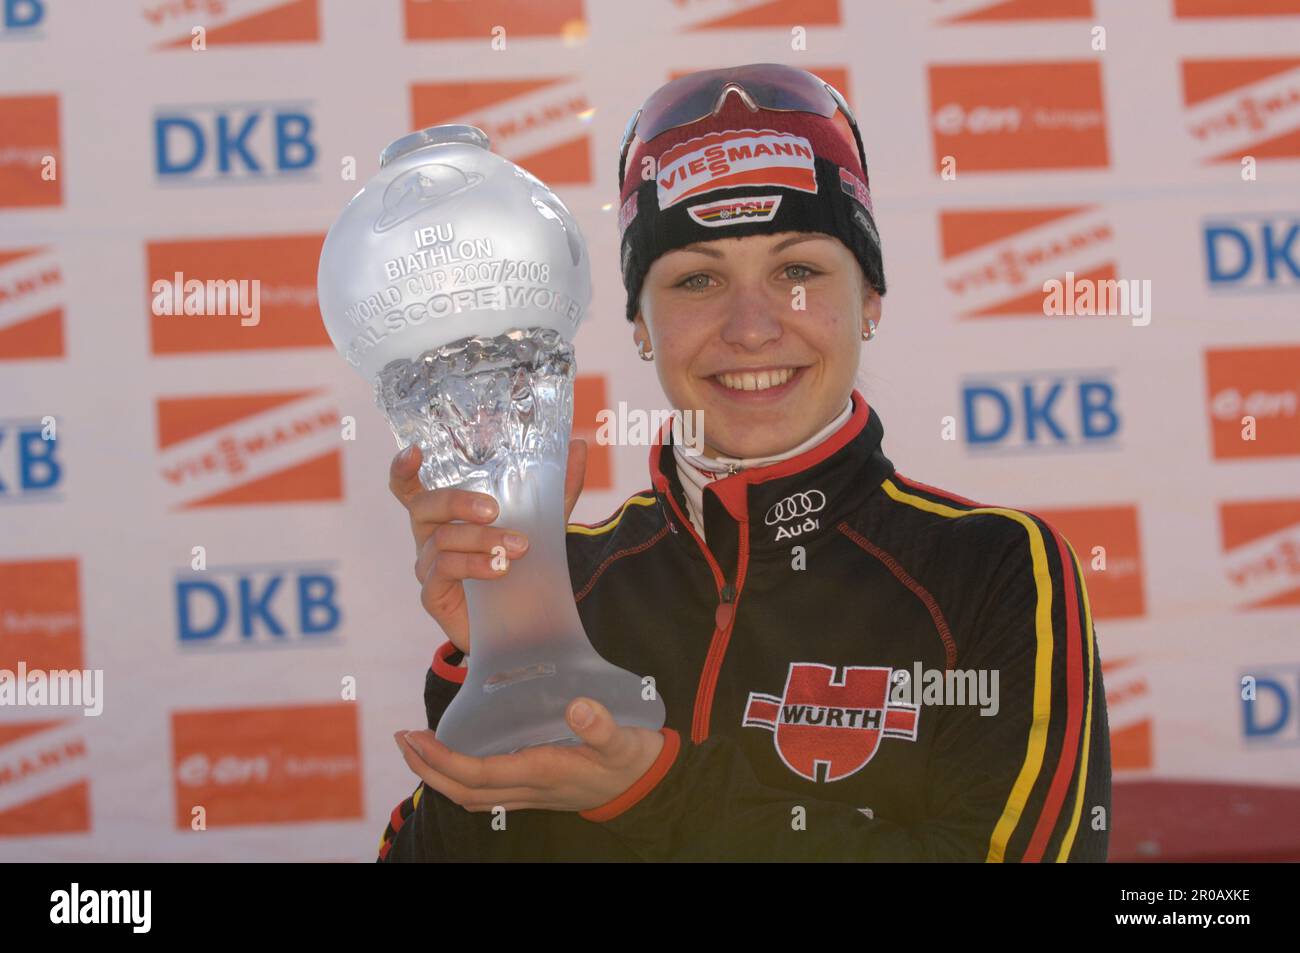 Magdalena Neuner, die Gesamt Welt Cup Siegerin mit dem Pokal für den Gesamtweltcup. Biathlon 10km Massenstart der Frauen 16.3.2008 Stock Photo